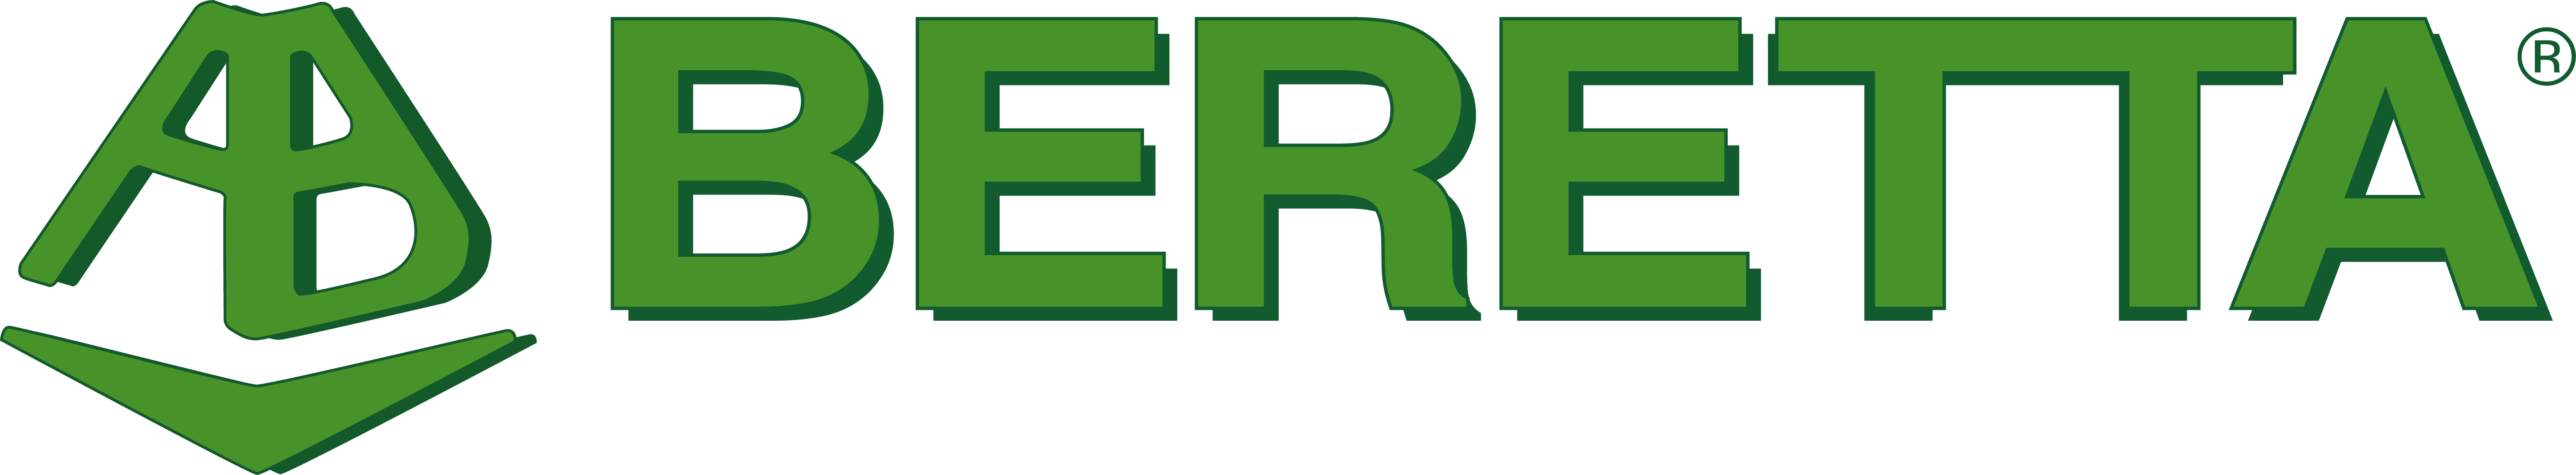 logo_beretta